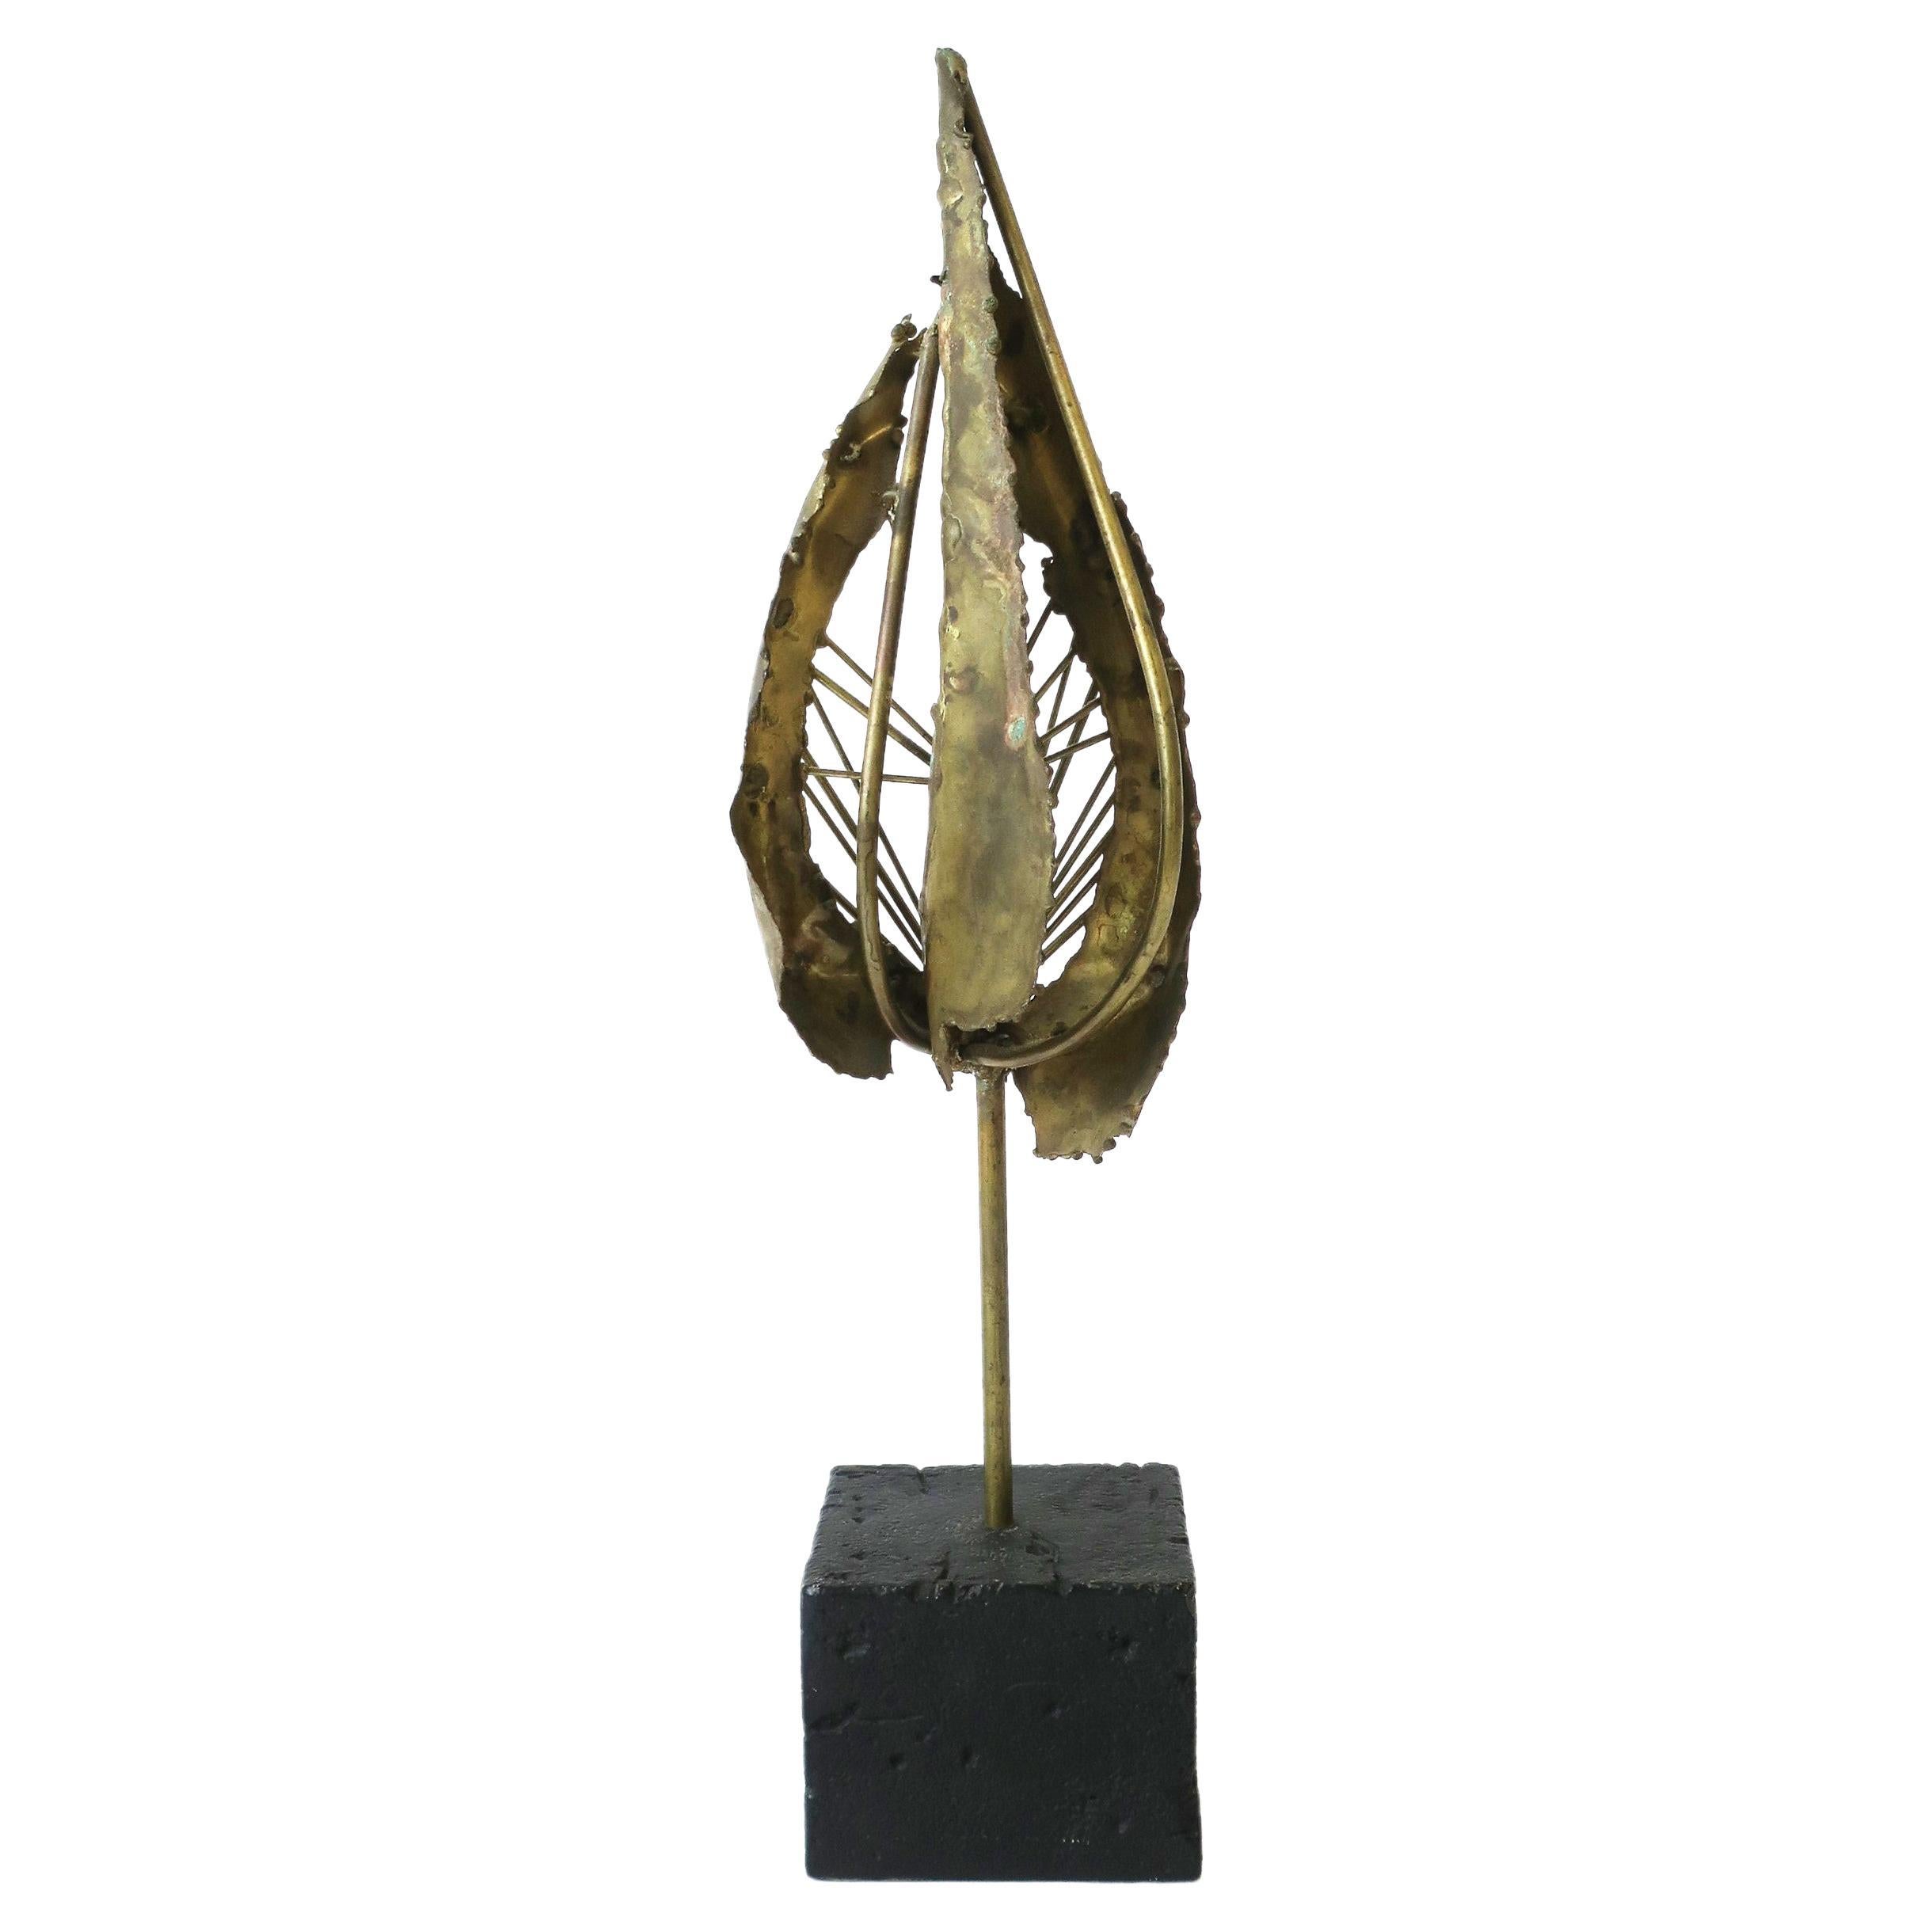 Midcentury Modern Brass Sculpture, circa 1960s